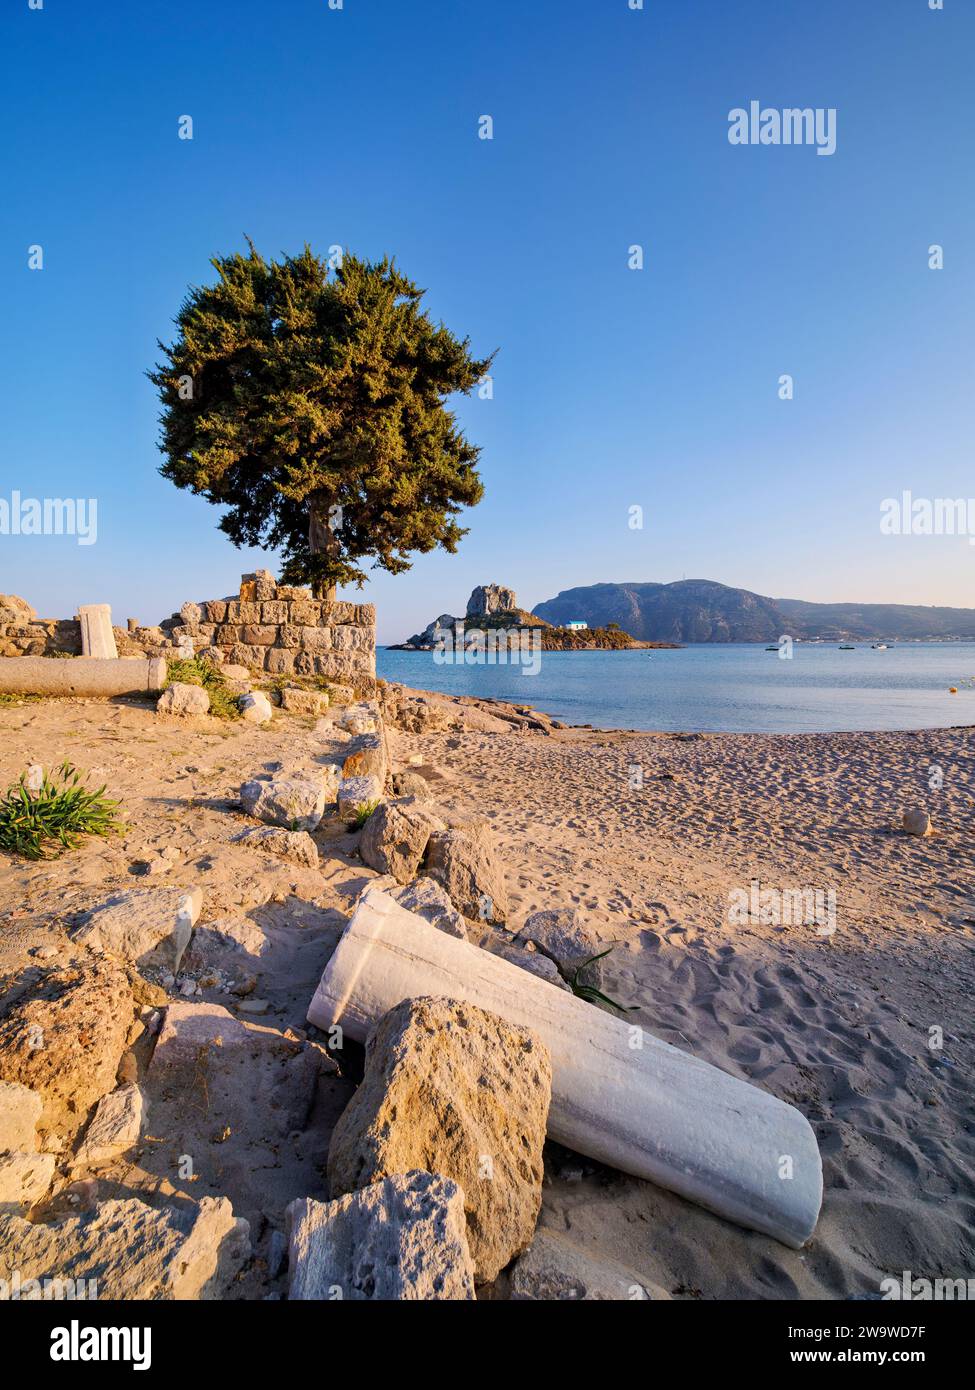 St. Stefanos Basilica Ruins and Kastri Island at sunset, Agios Stefanos Beach, Kos Island, Dodecanese, Greece Stock Photo